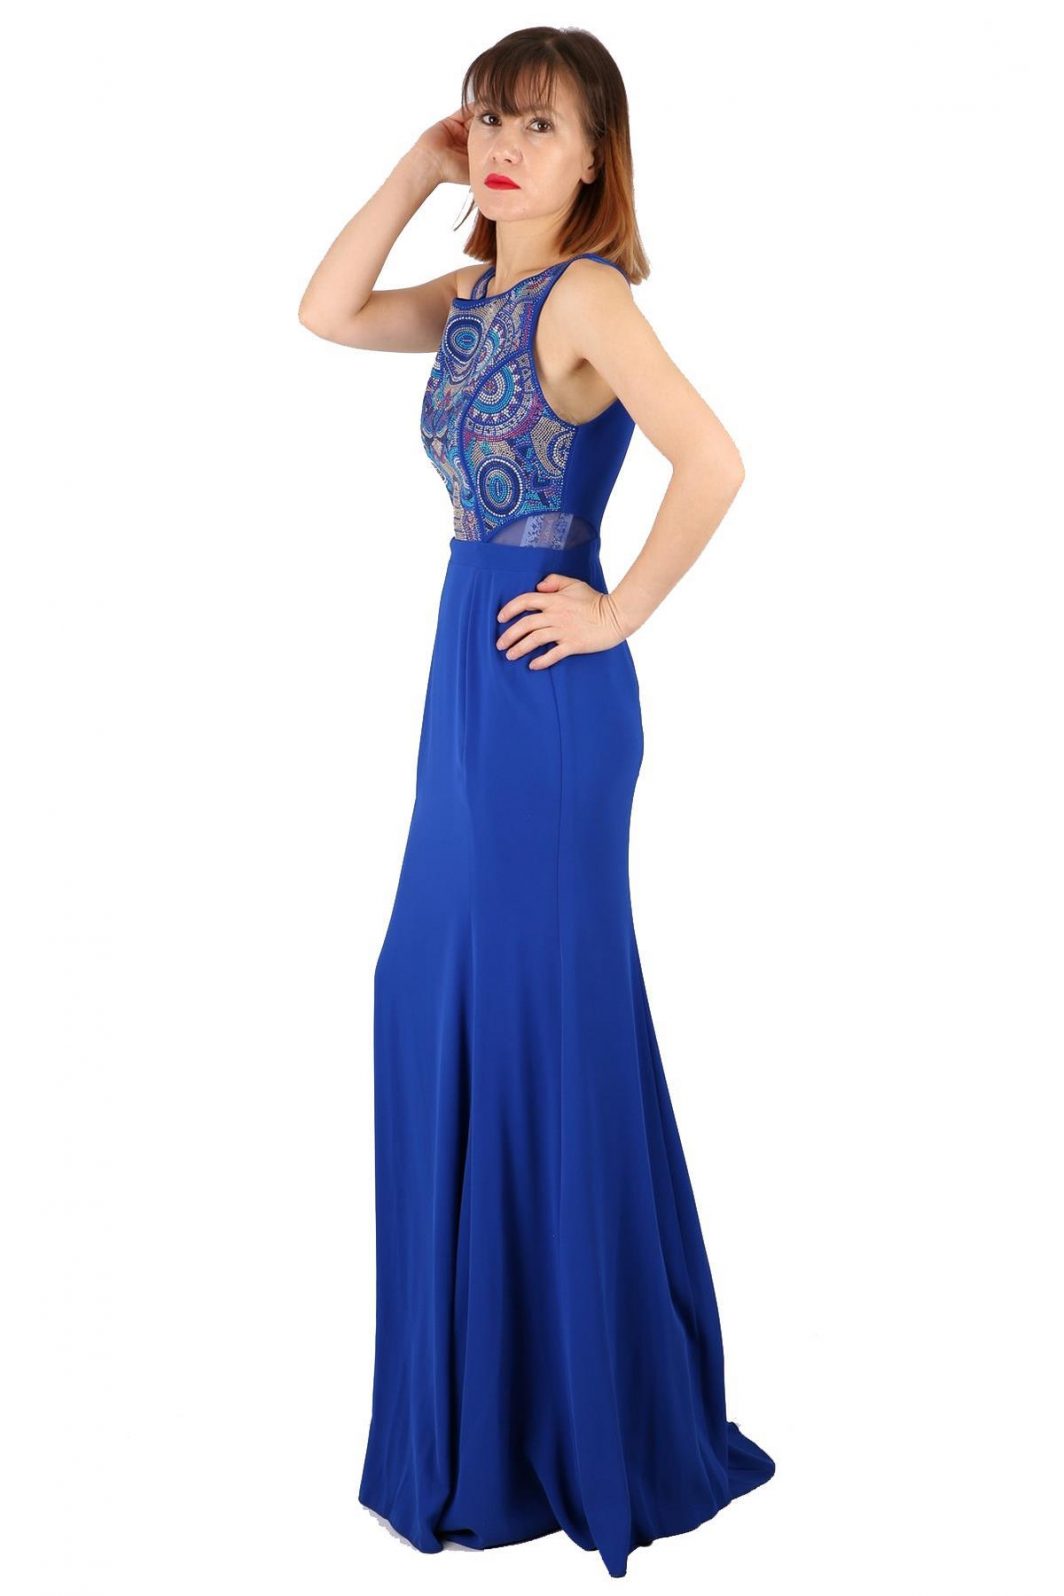 Fierte kadın abiye elbise tn7705 oval yaka balık saks mavi bordo abiye elbise